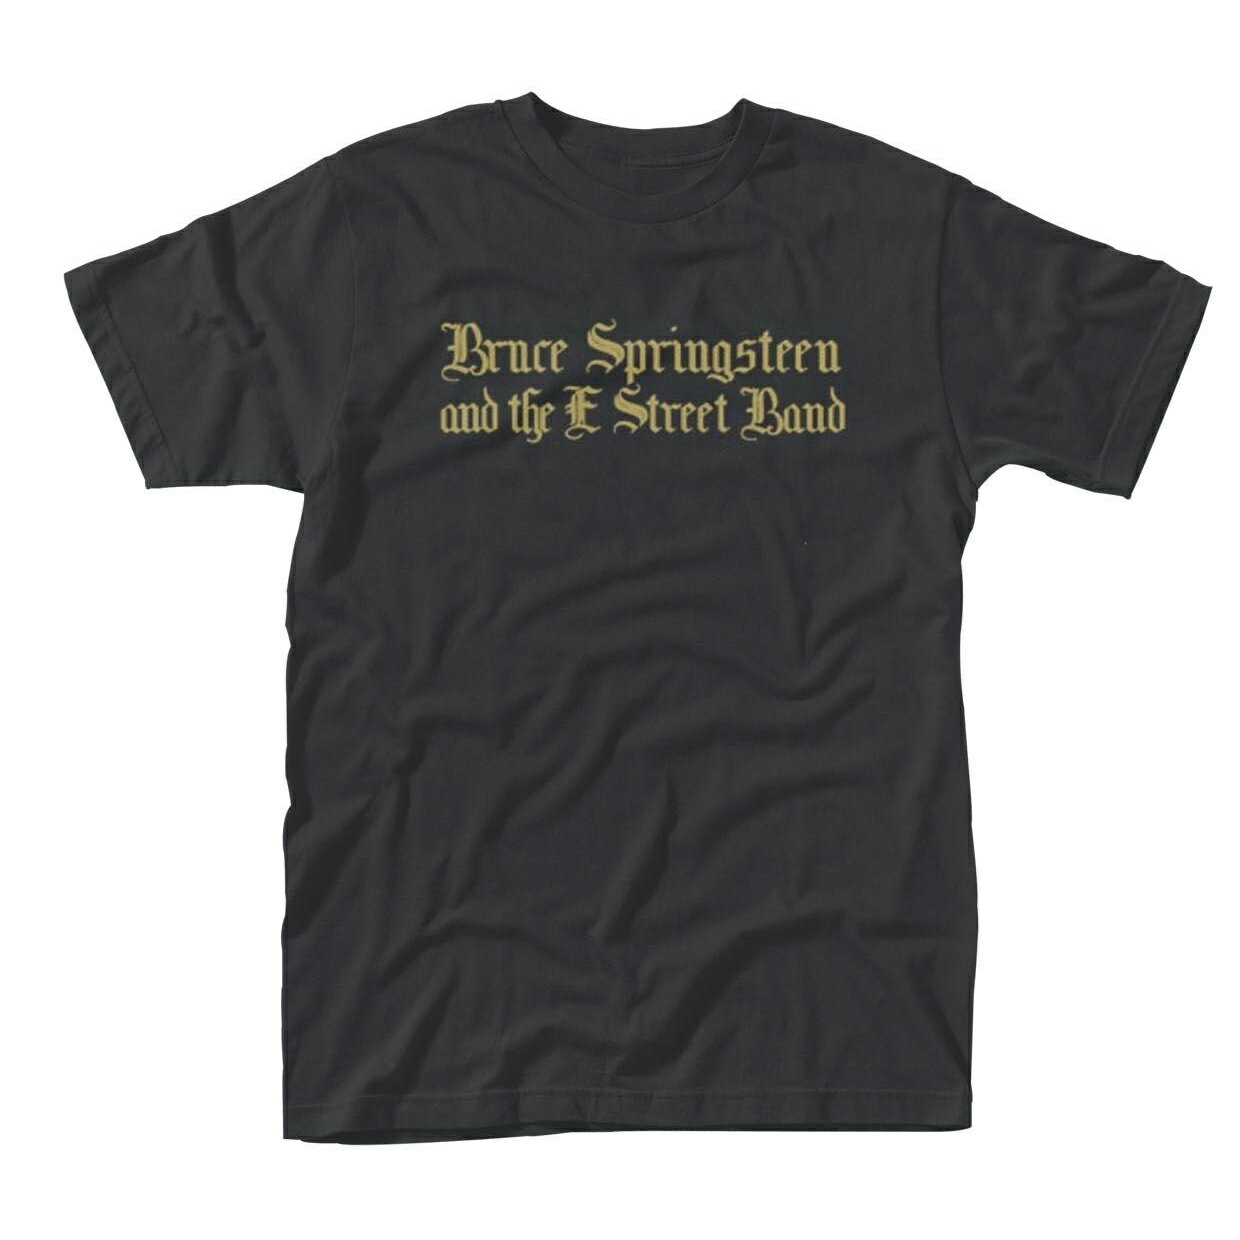 (ブルース・スプリングスティーン・アンド・ザ・Eストリート・バンド) Bruce Springsteen & The E Street Band オフィシャル商品 ユニセックス Tシャツ 半袖 トップス 【海外通販】